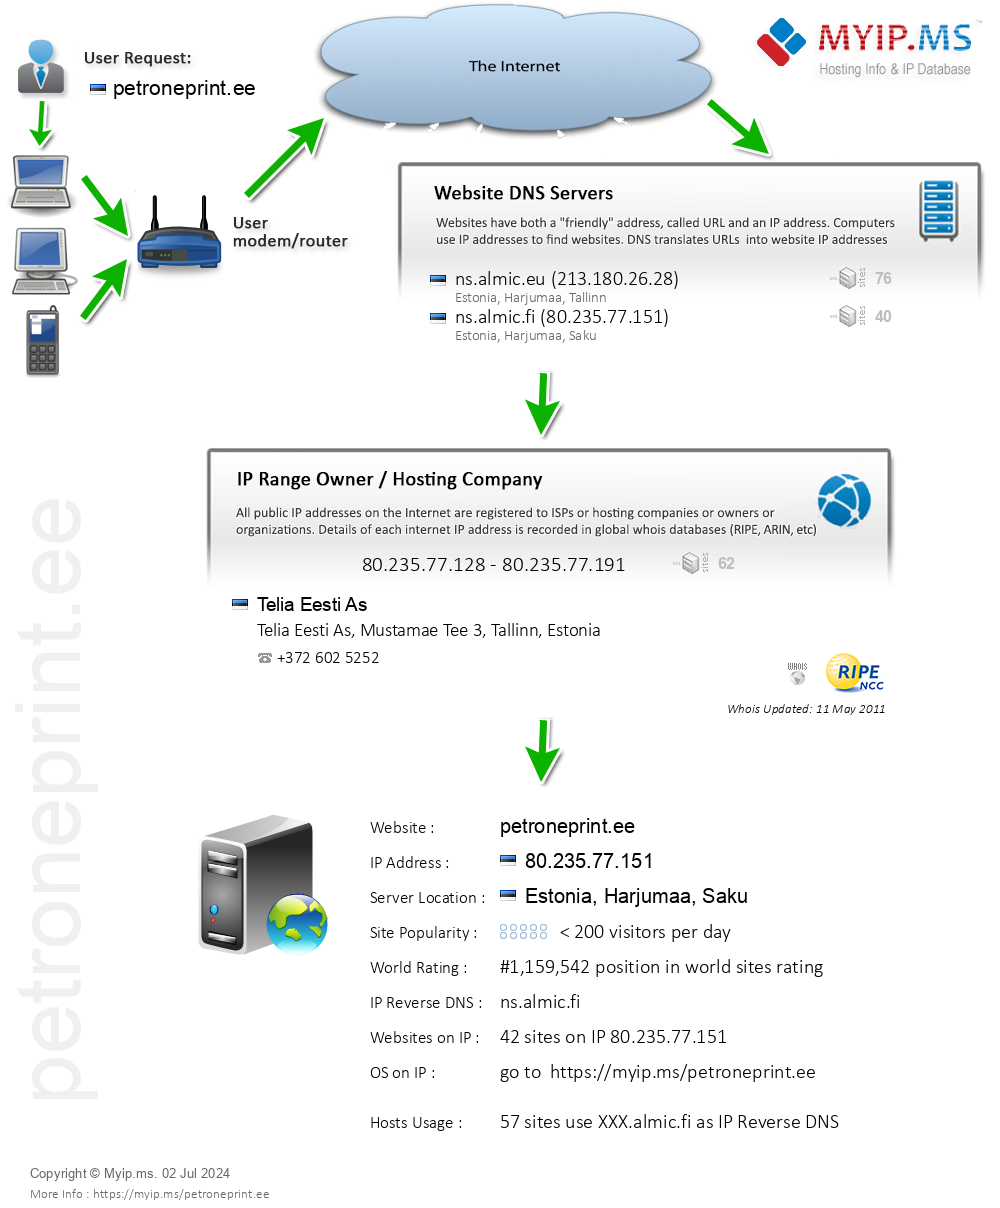 Petroneprint.ee - Website Hosting Visual IP Diagram